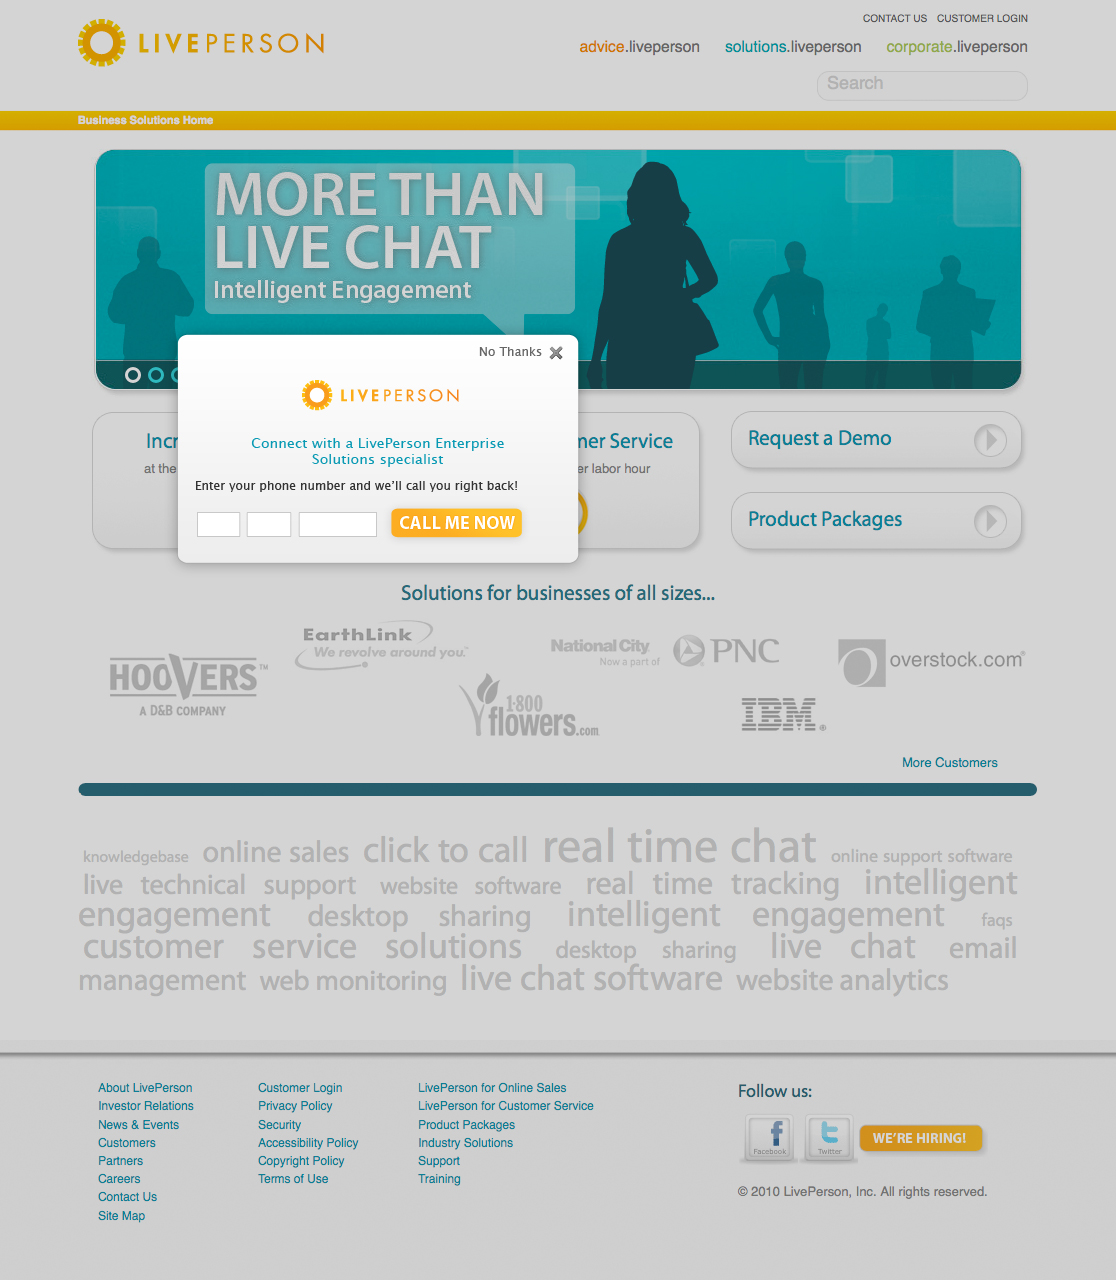 Design & Asset Management for Live Chat Deployments